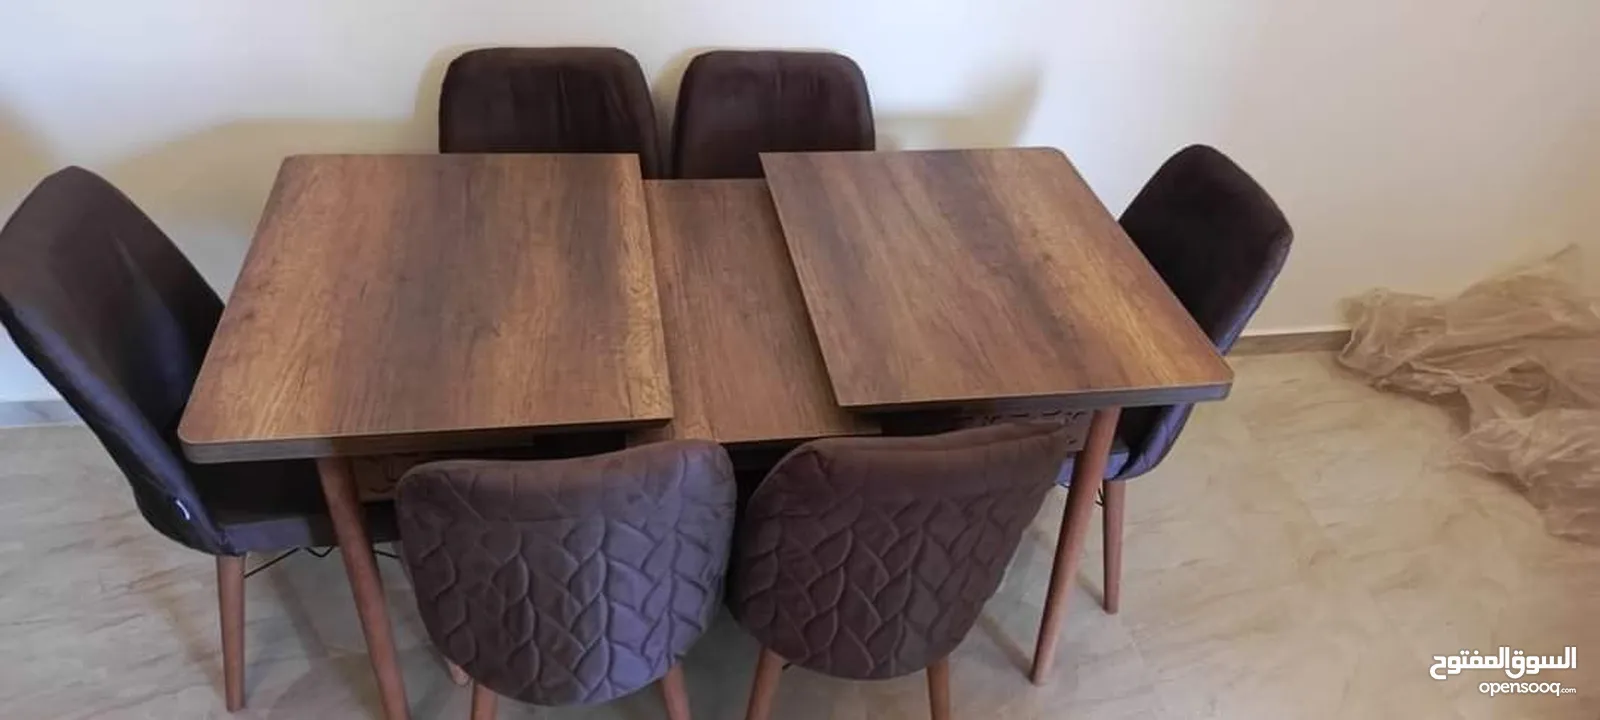 طاولات طاولة سفرة صناعة تركيا مع 6 كراسي